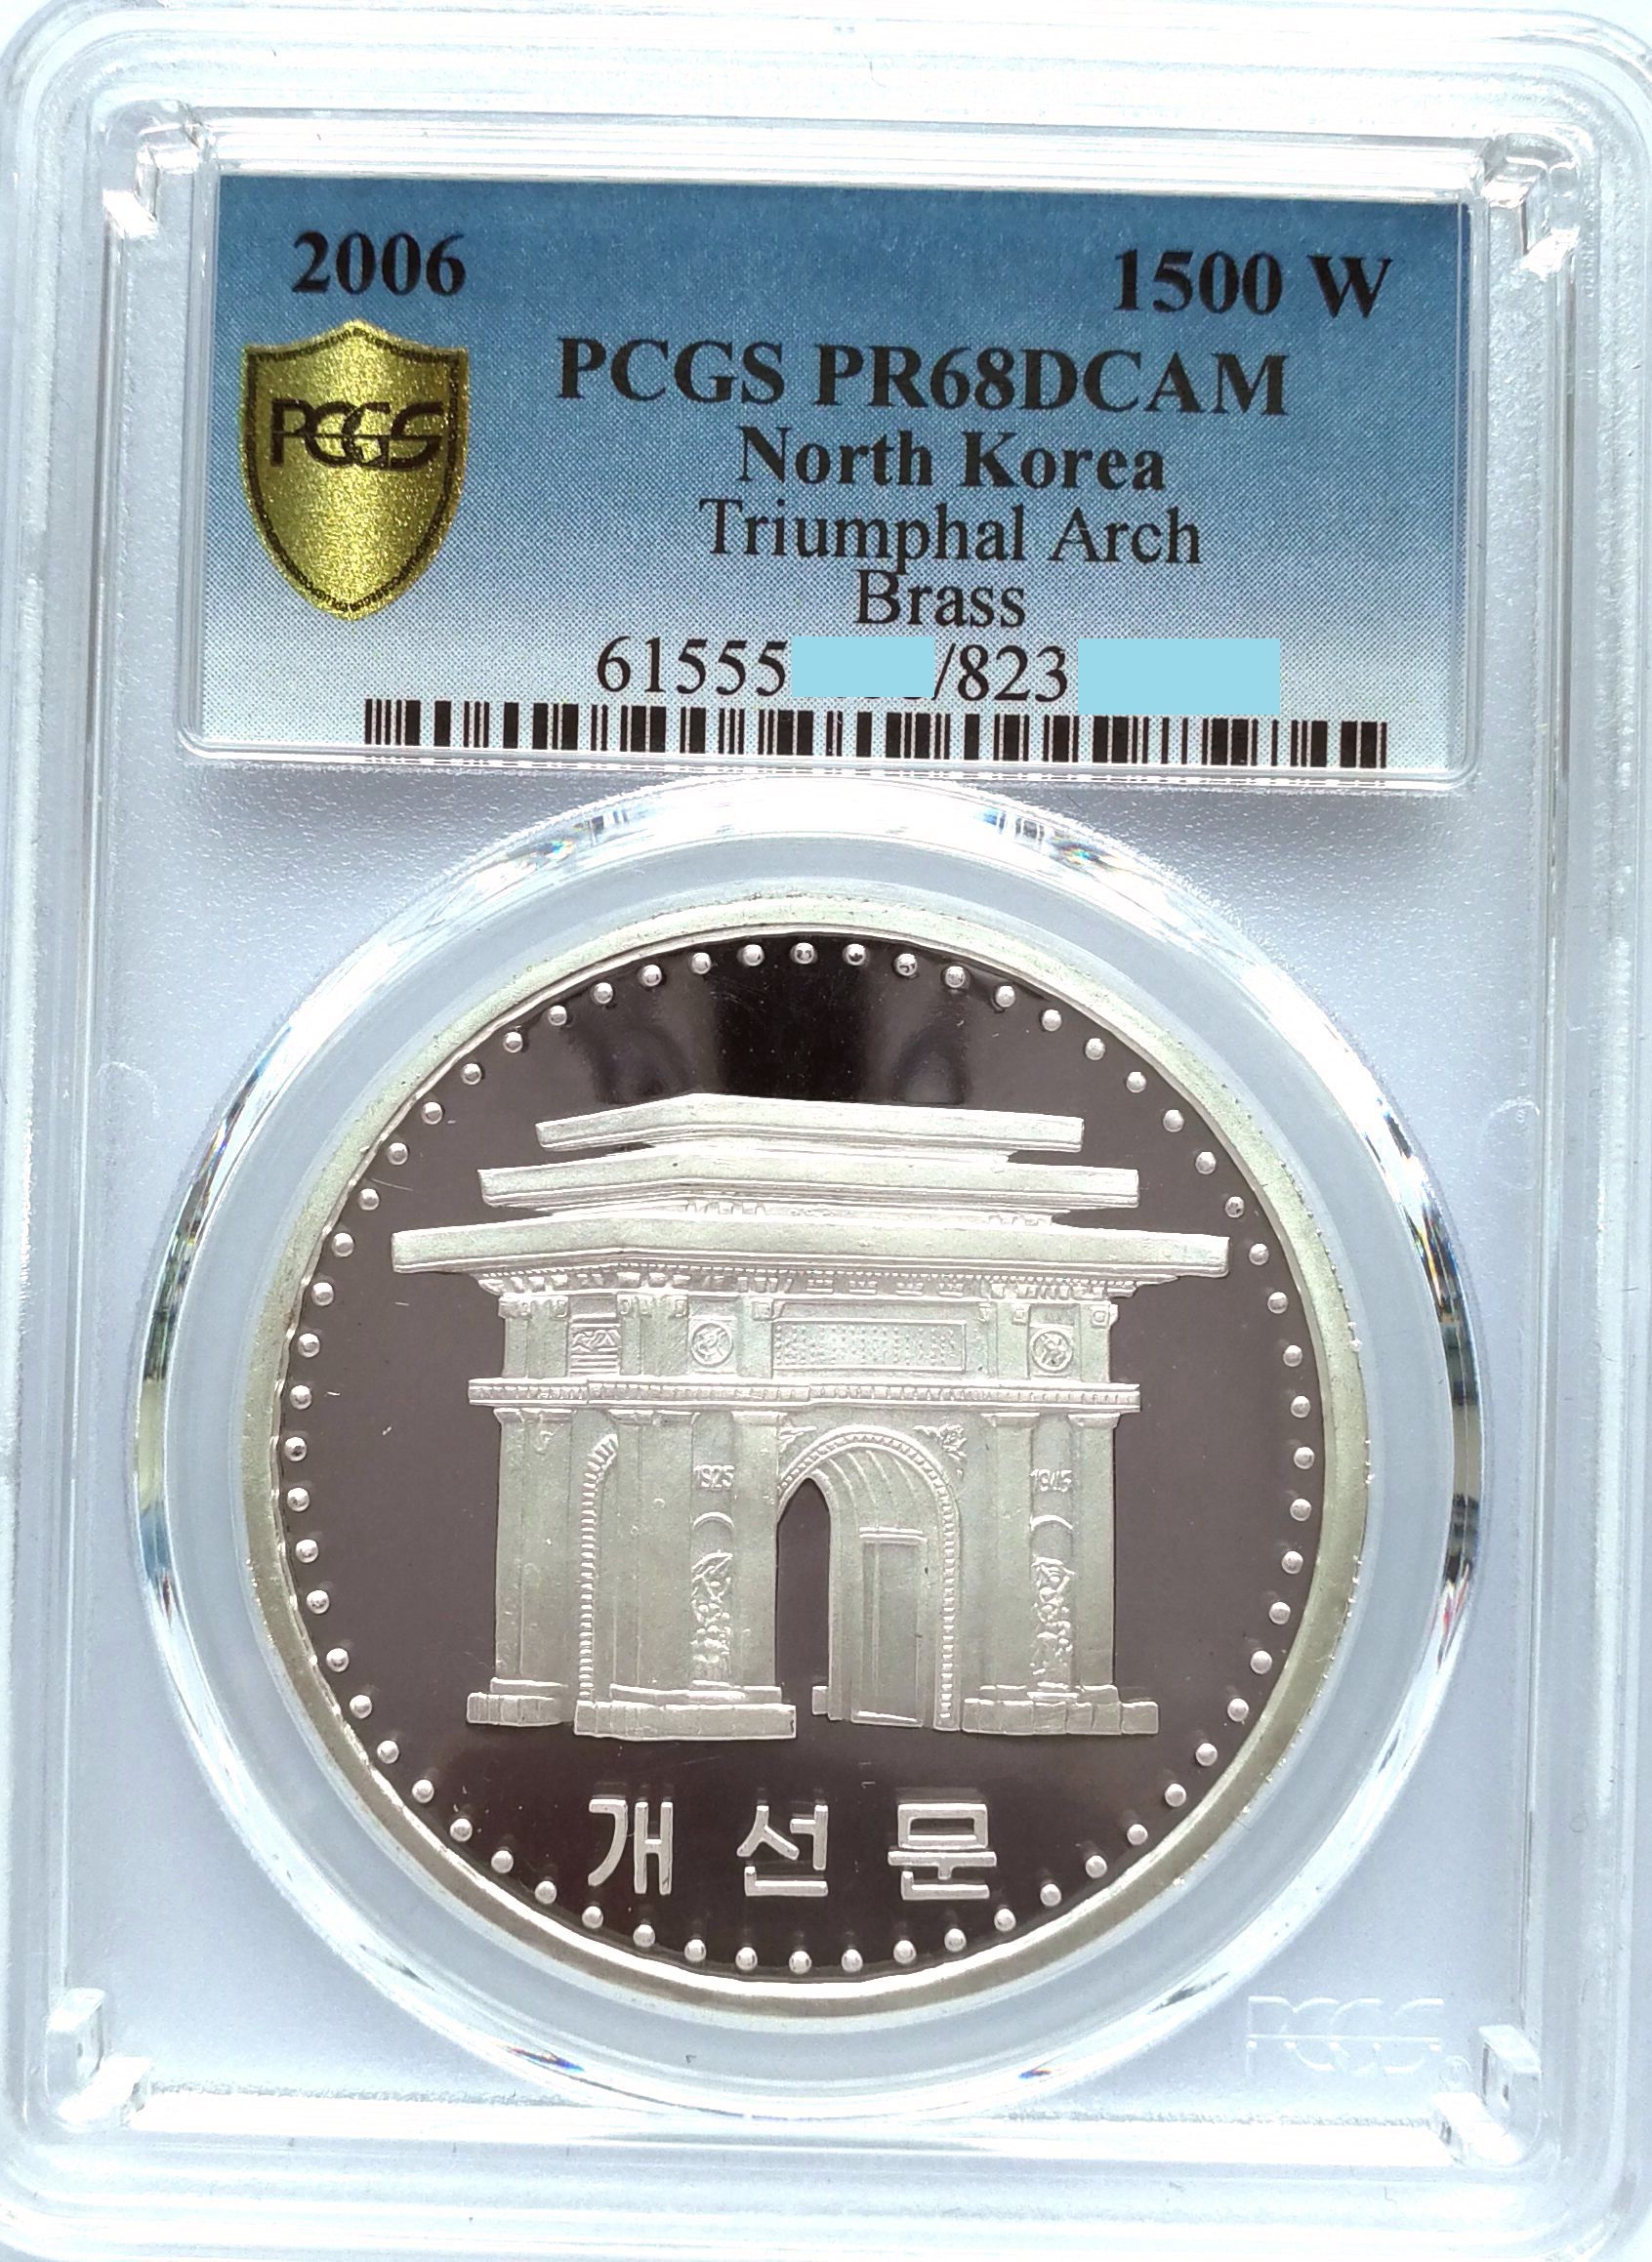 L3562, Korea "Triumphal Arch" Silver Coin 2006, PCGS PR68 DCAM